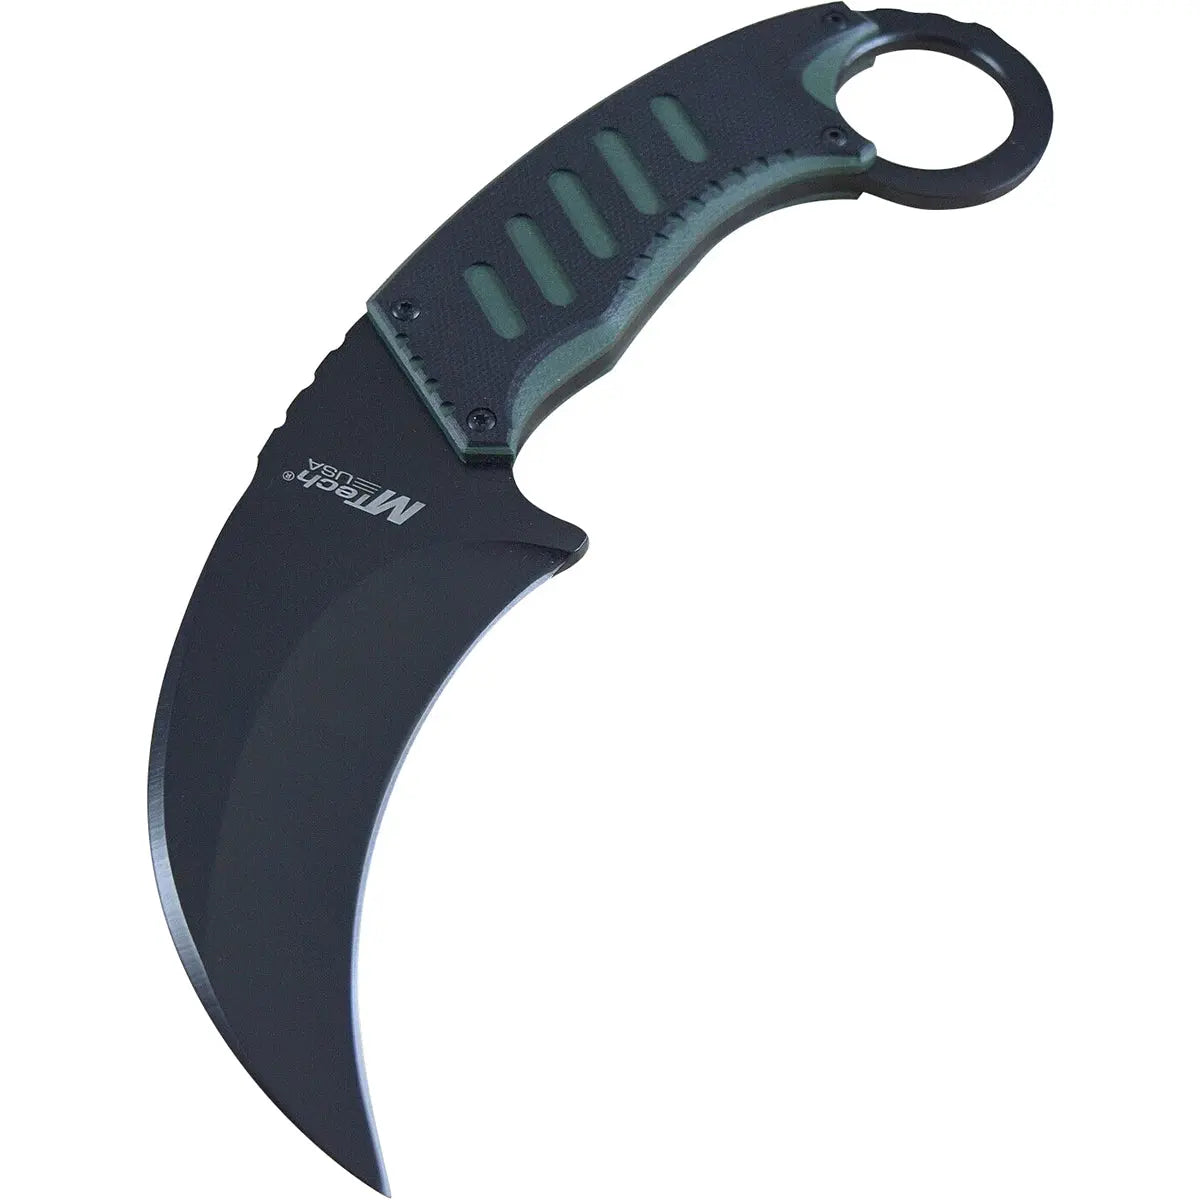 MTech USA Tactical Karambit Fixed Blade Neck Knife, G10, Black/Green, MT-665BG M-Tech